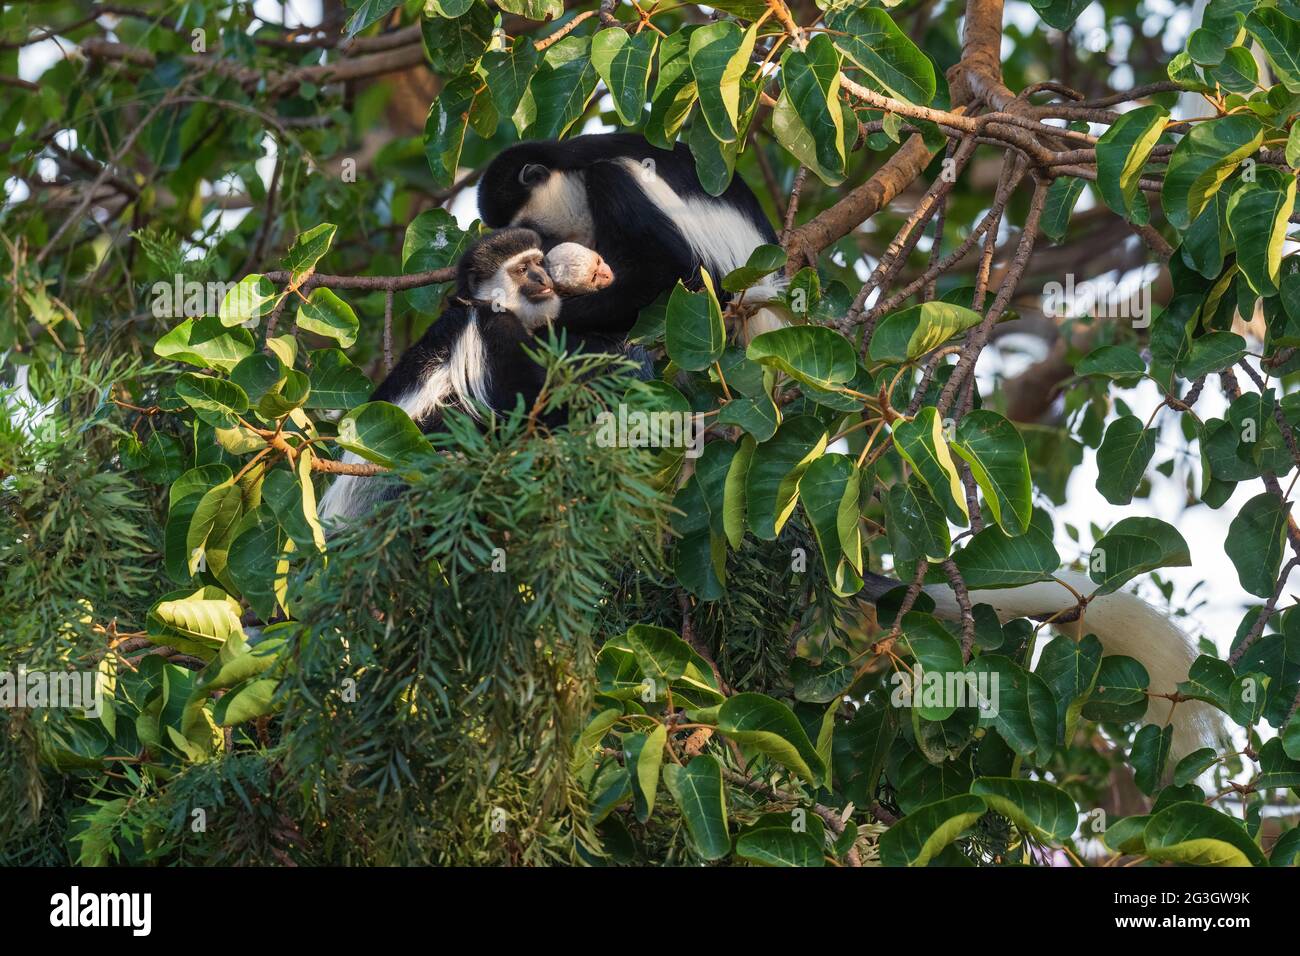 Colobus noir et blanc - Colobus guereza, beau primate noir et blanc des forêts et des terres boisées africaines, forêt de Harenna, Éthiopie. Banque D'Images